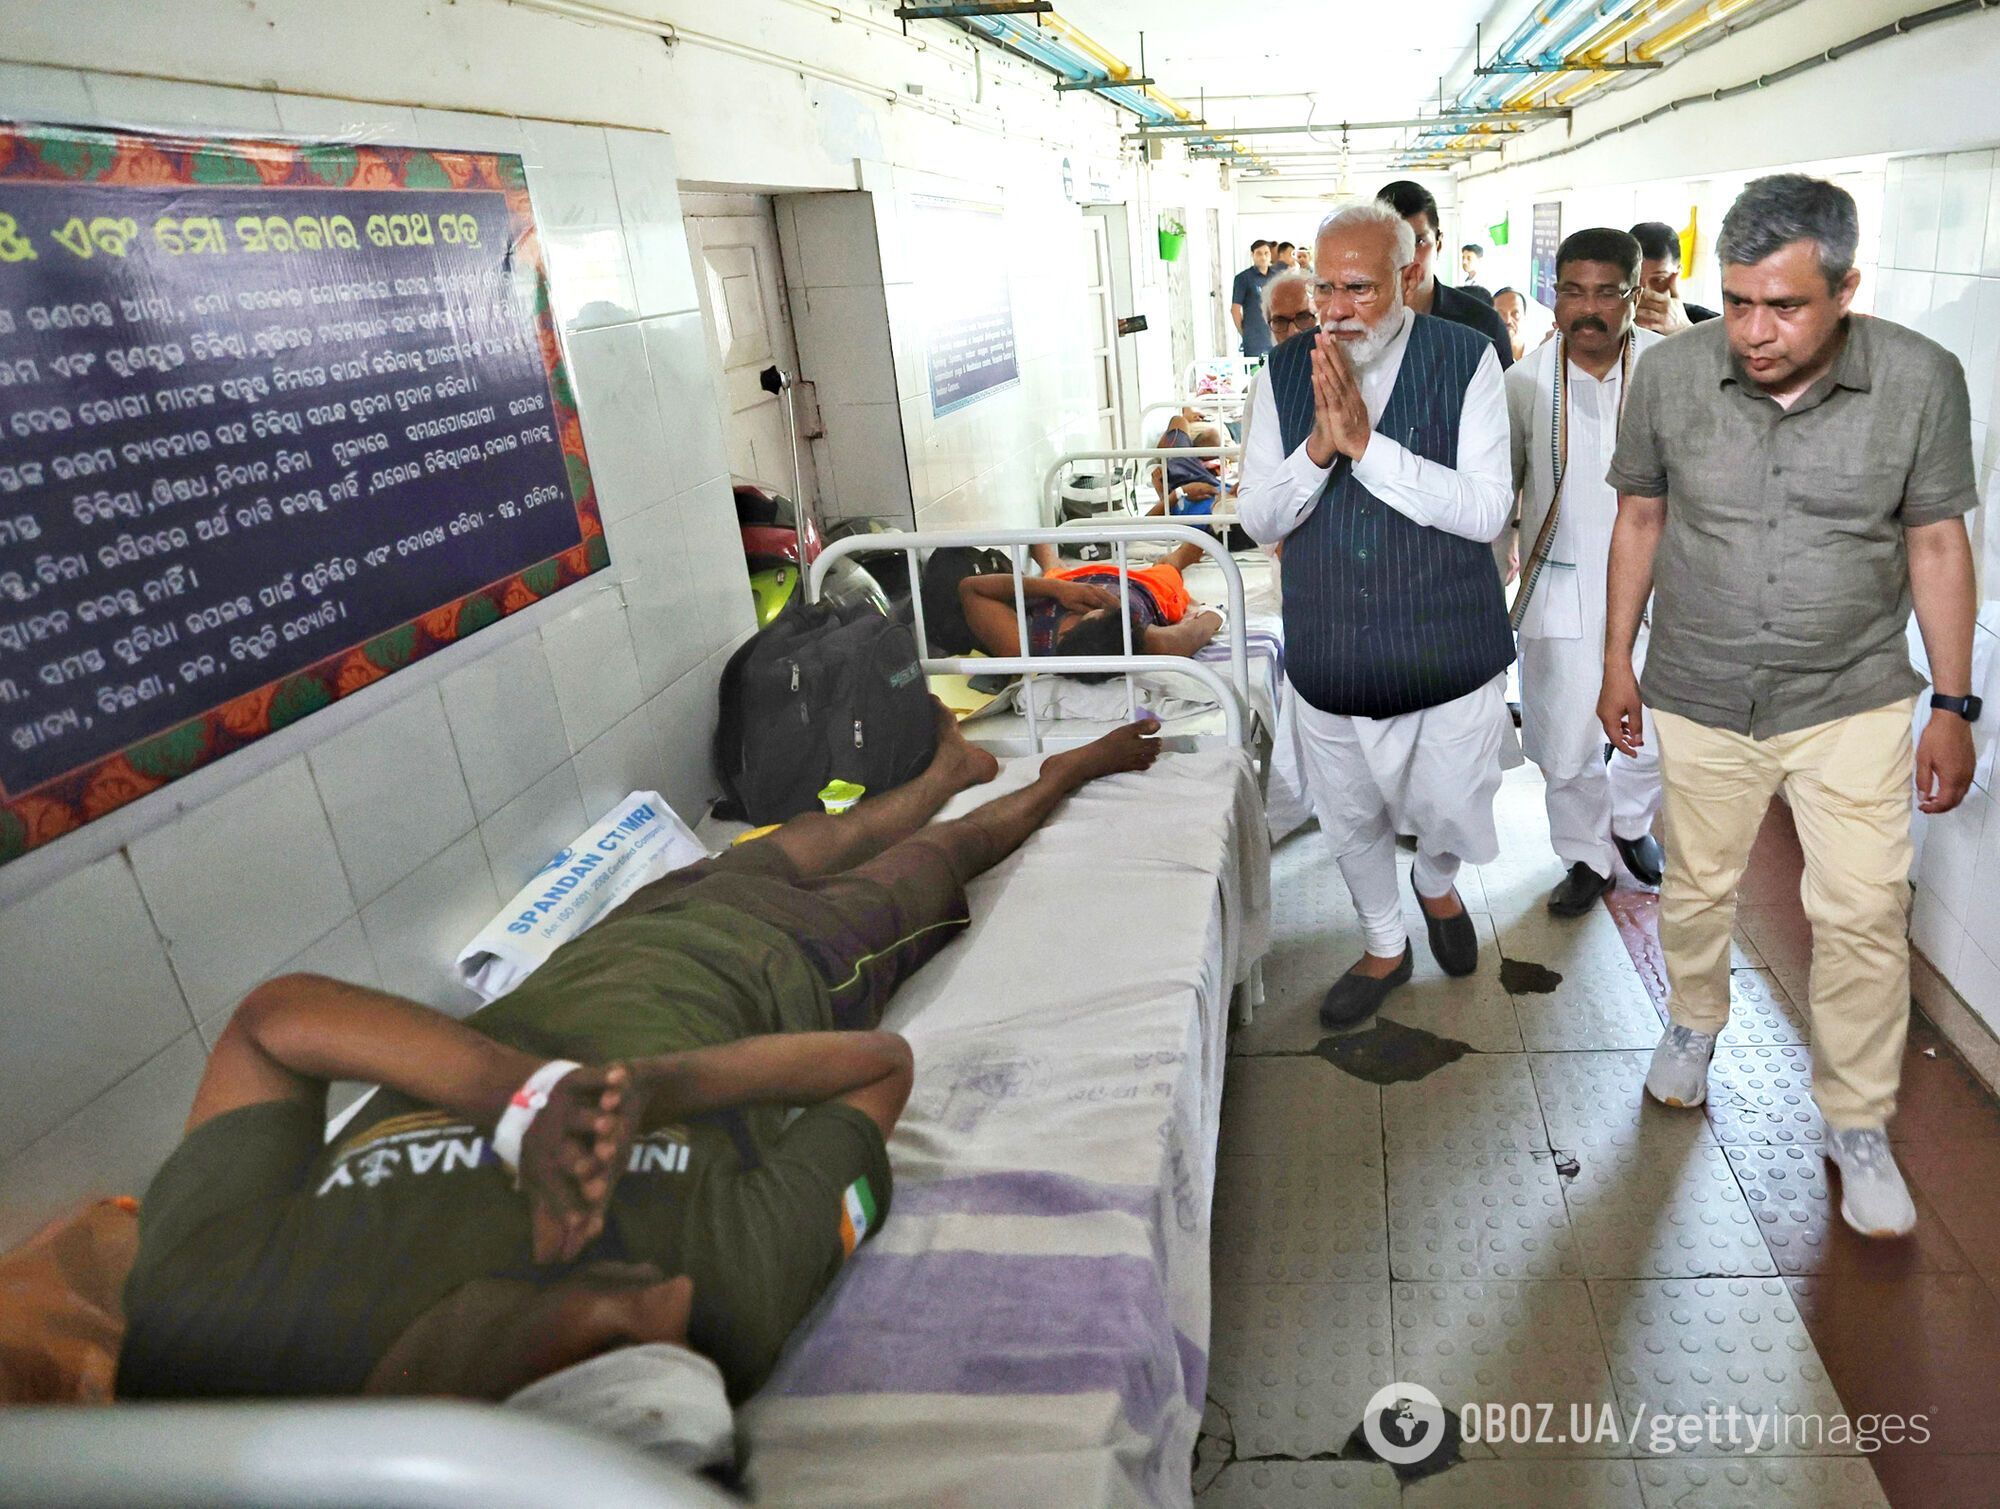 Самая большая трагедия за 20 лет: в Индии уже 294 погибших после столкновения поездов